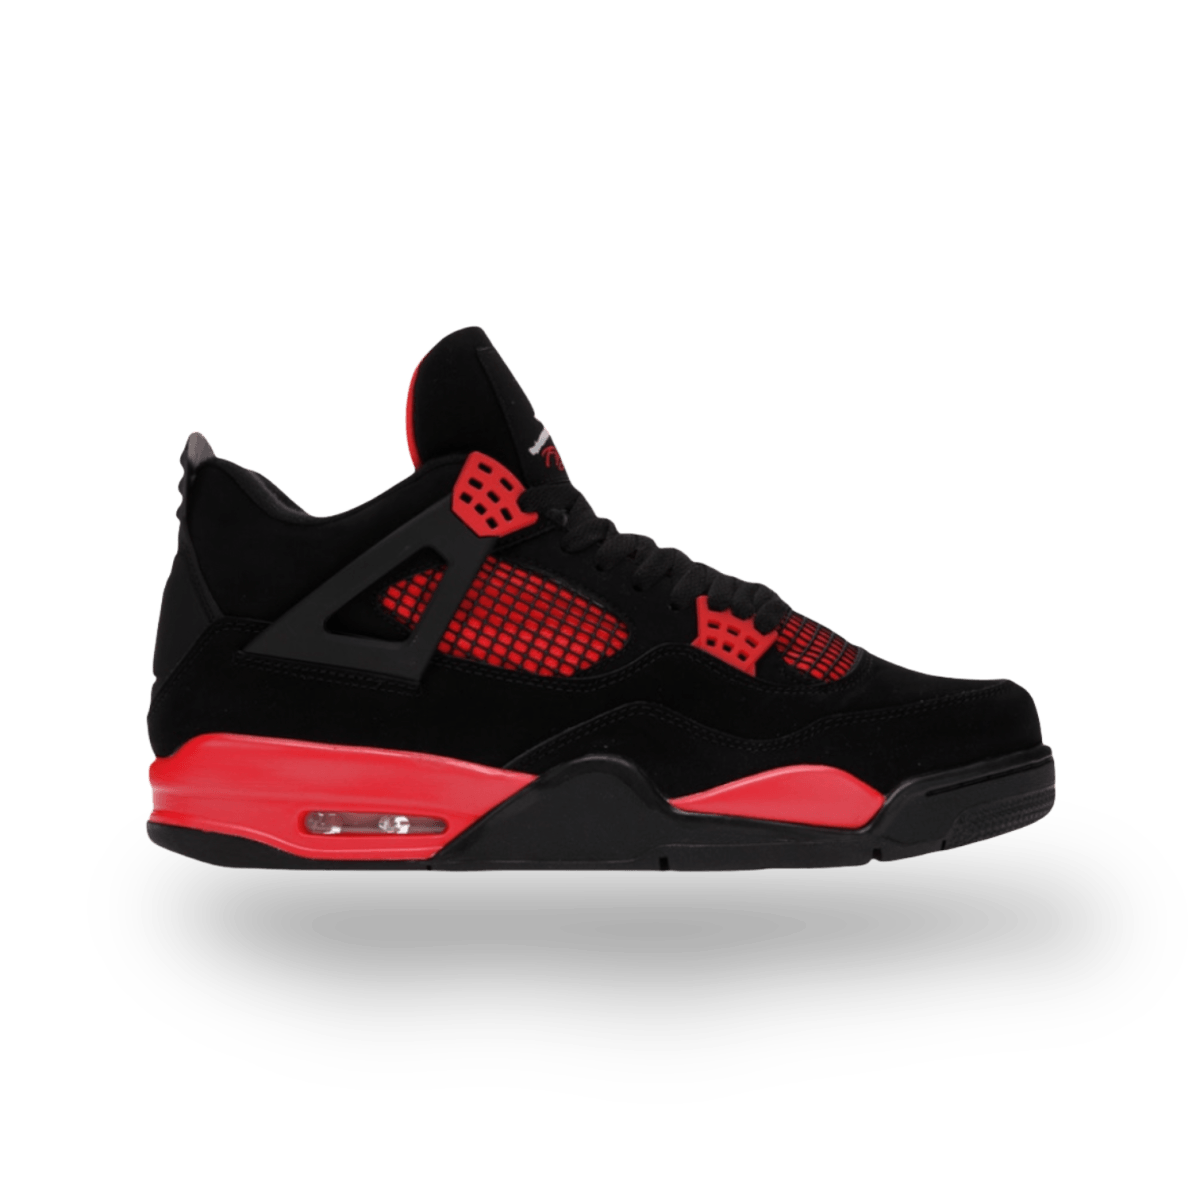 Jordan 4 Retro Red Thunder - Mid Sneaker - Jawns on Fire Sneakers & Streetwear